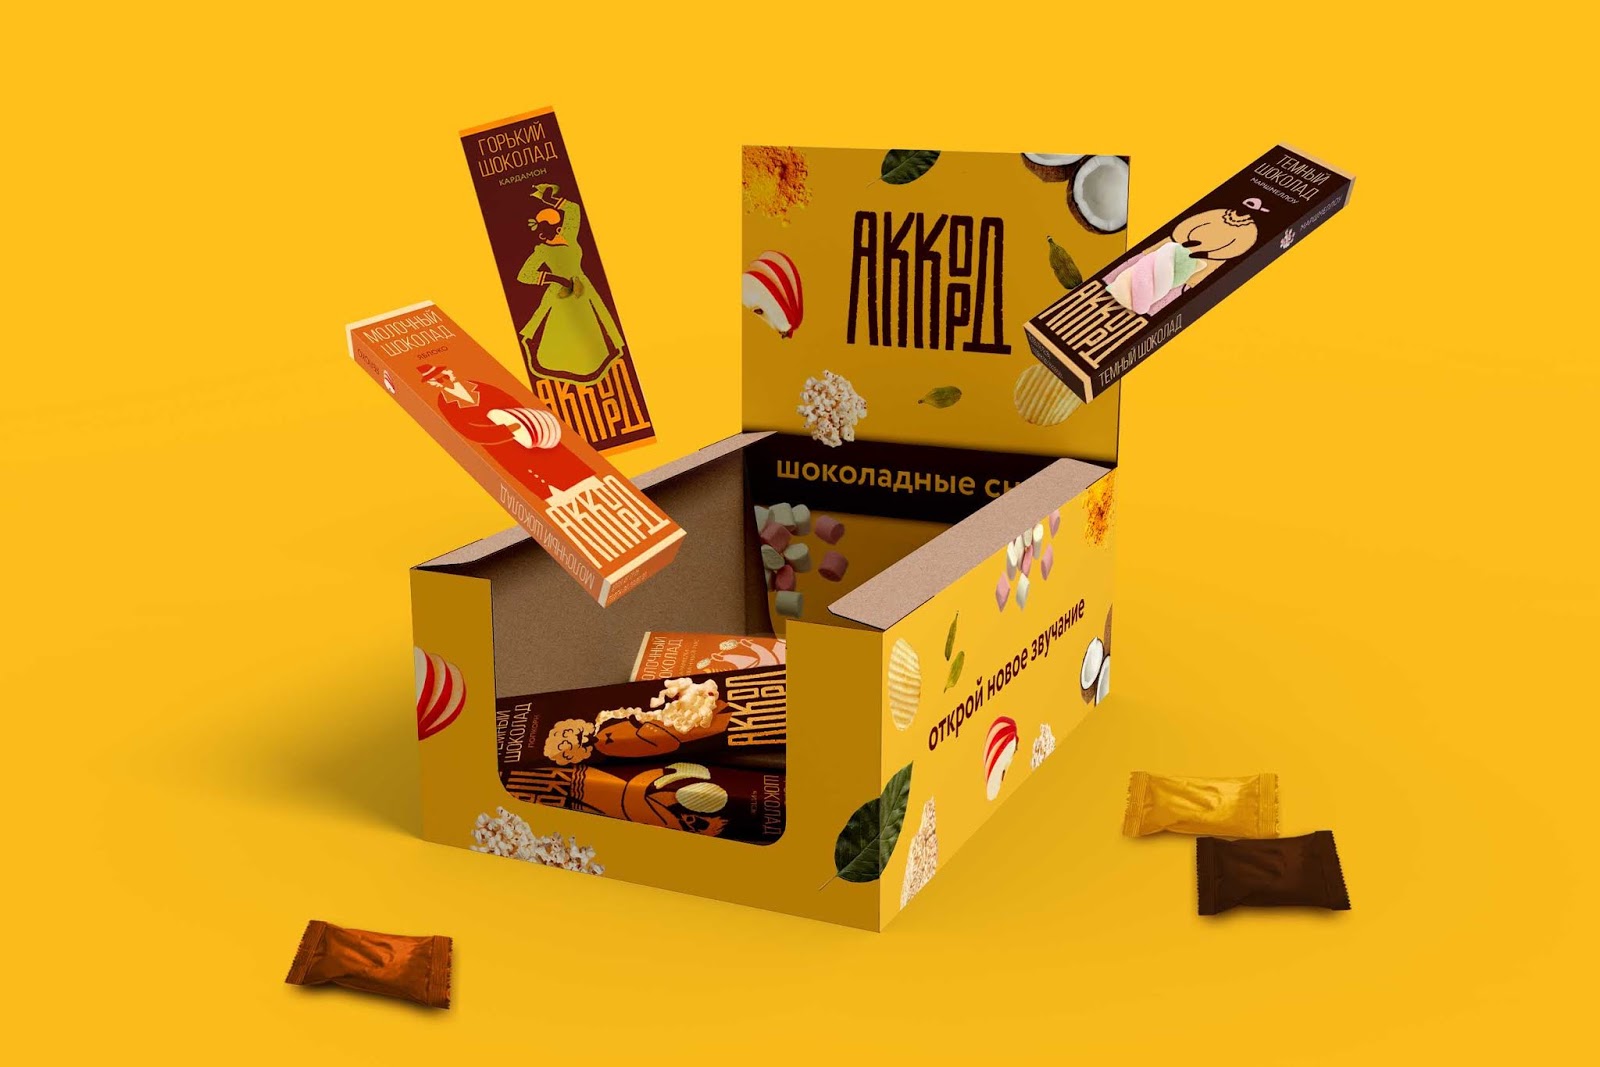 Пачки шоколада. Шоколадные батончики в упаковке. Шоколад в упаковке батончик. Дизайн упаковки шоколада. Импортные шоколадные батончики.